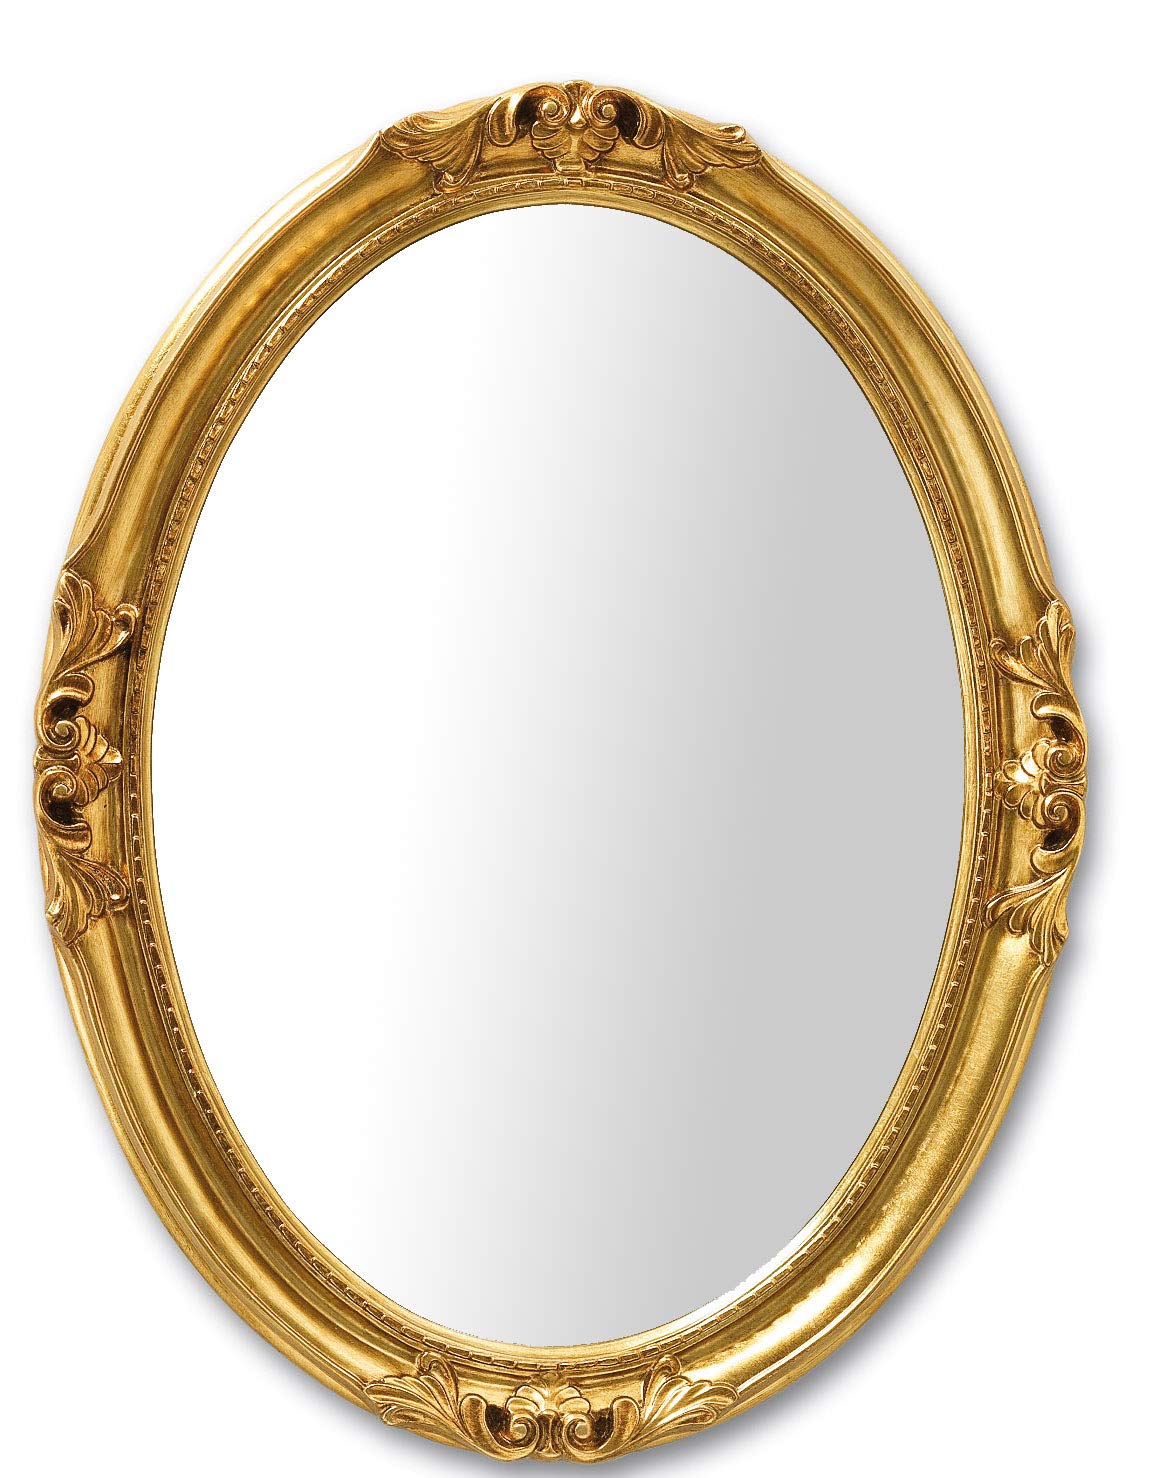 MO.WA Spiegel Wandspiegel Oval Klassisch Barock Stil cm. 63x83 Blattgold. Ovaler Spiegel mit Holzrahmen Gold antik, Wohnzimmer- Schlafzimmerspiegel Antike Spiegel